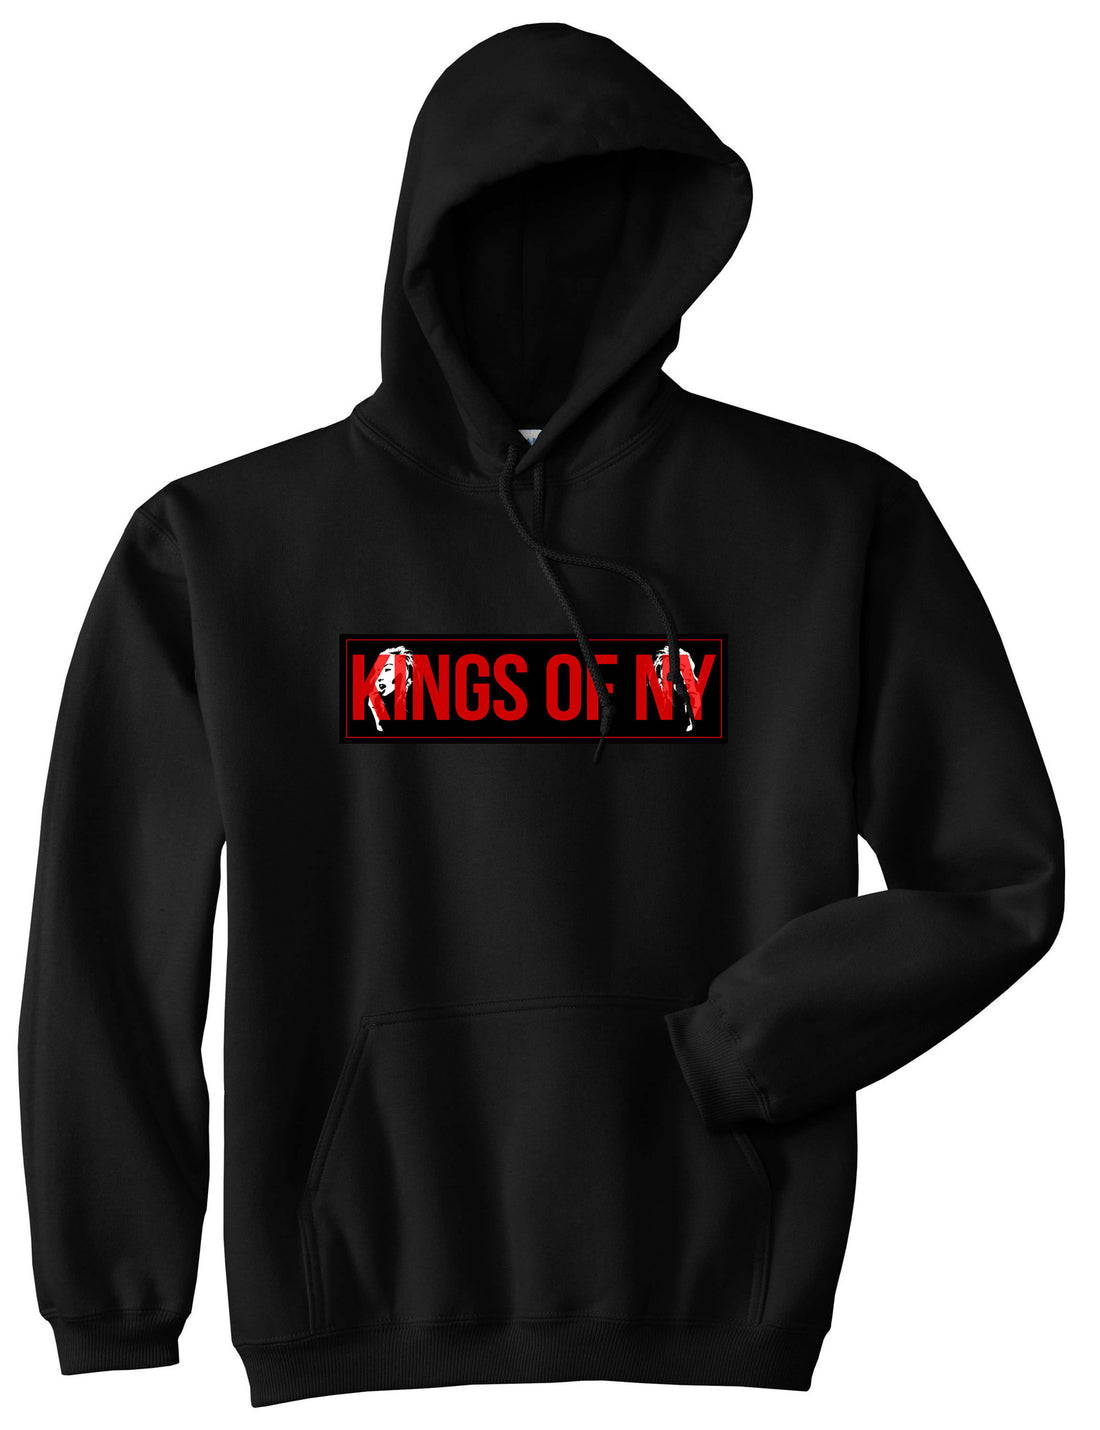 Red Girl Logo Print Pullover Hoodie Hoody in Black by Kings Of NY